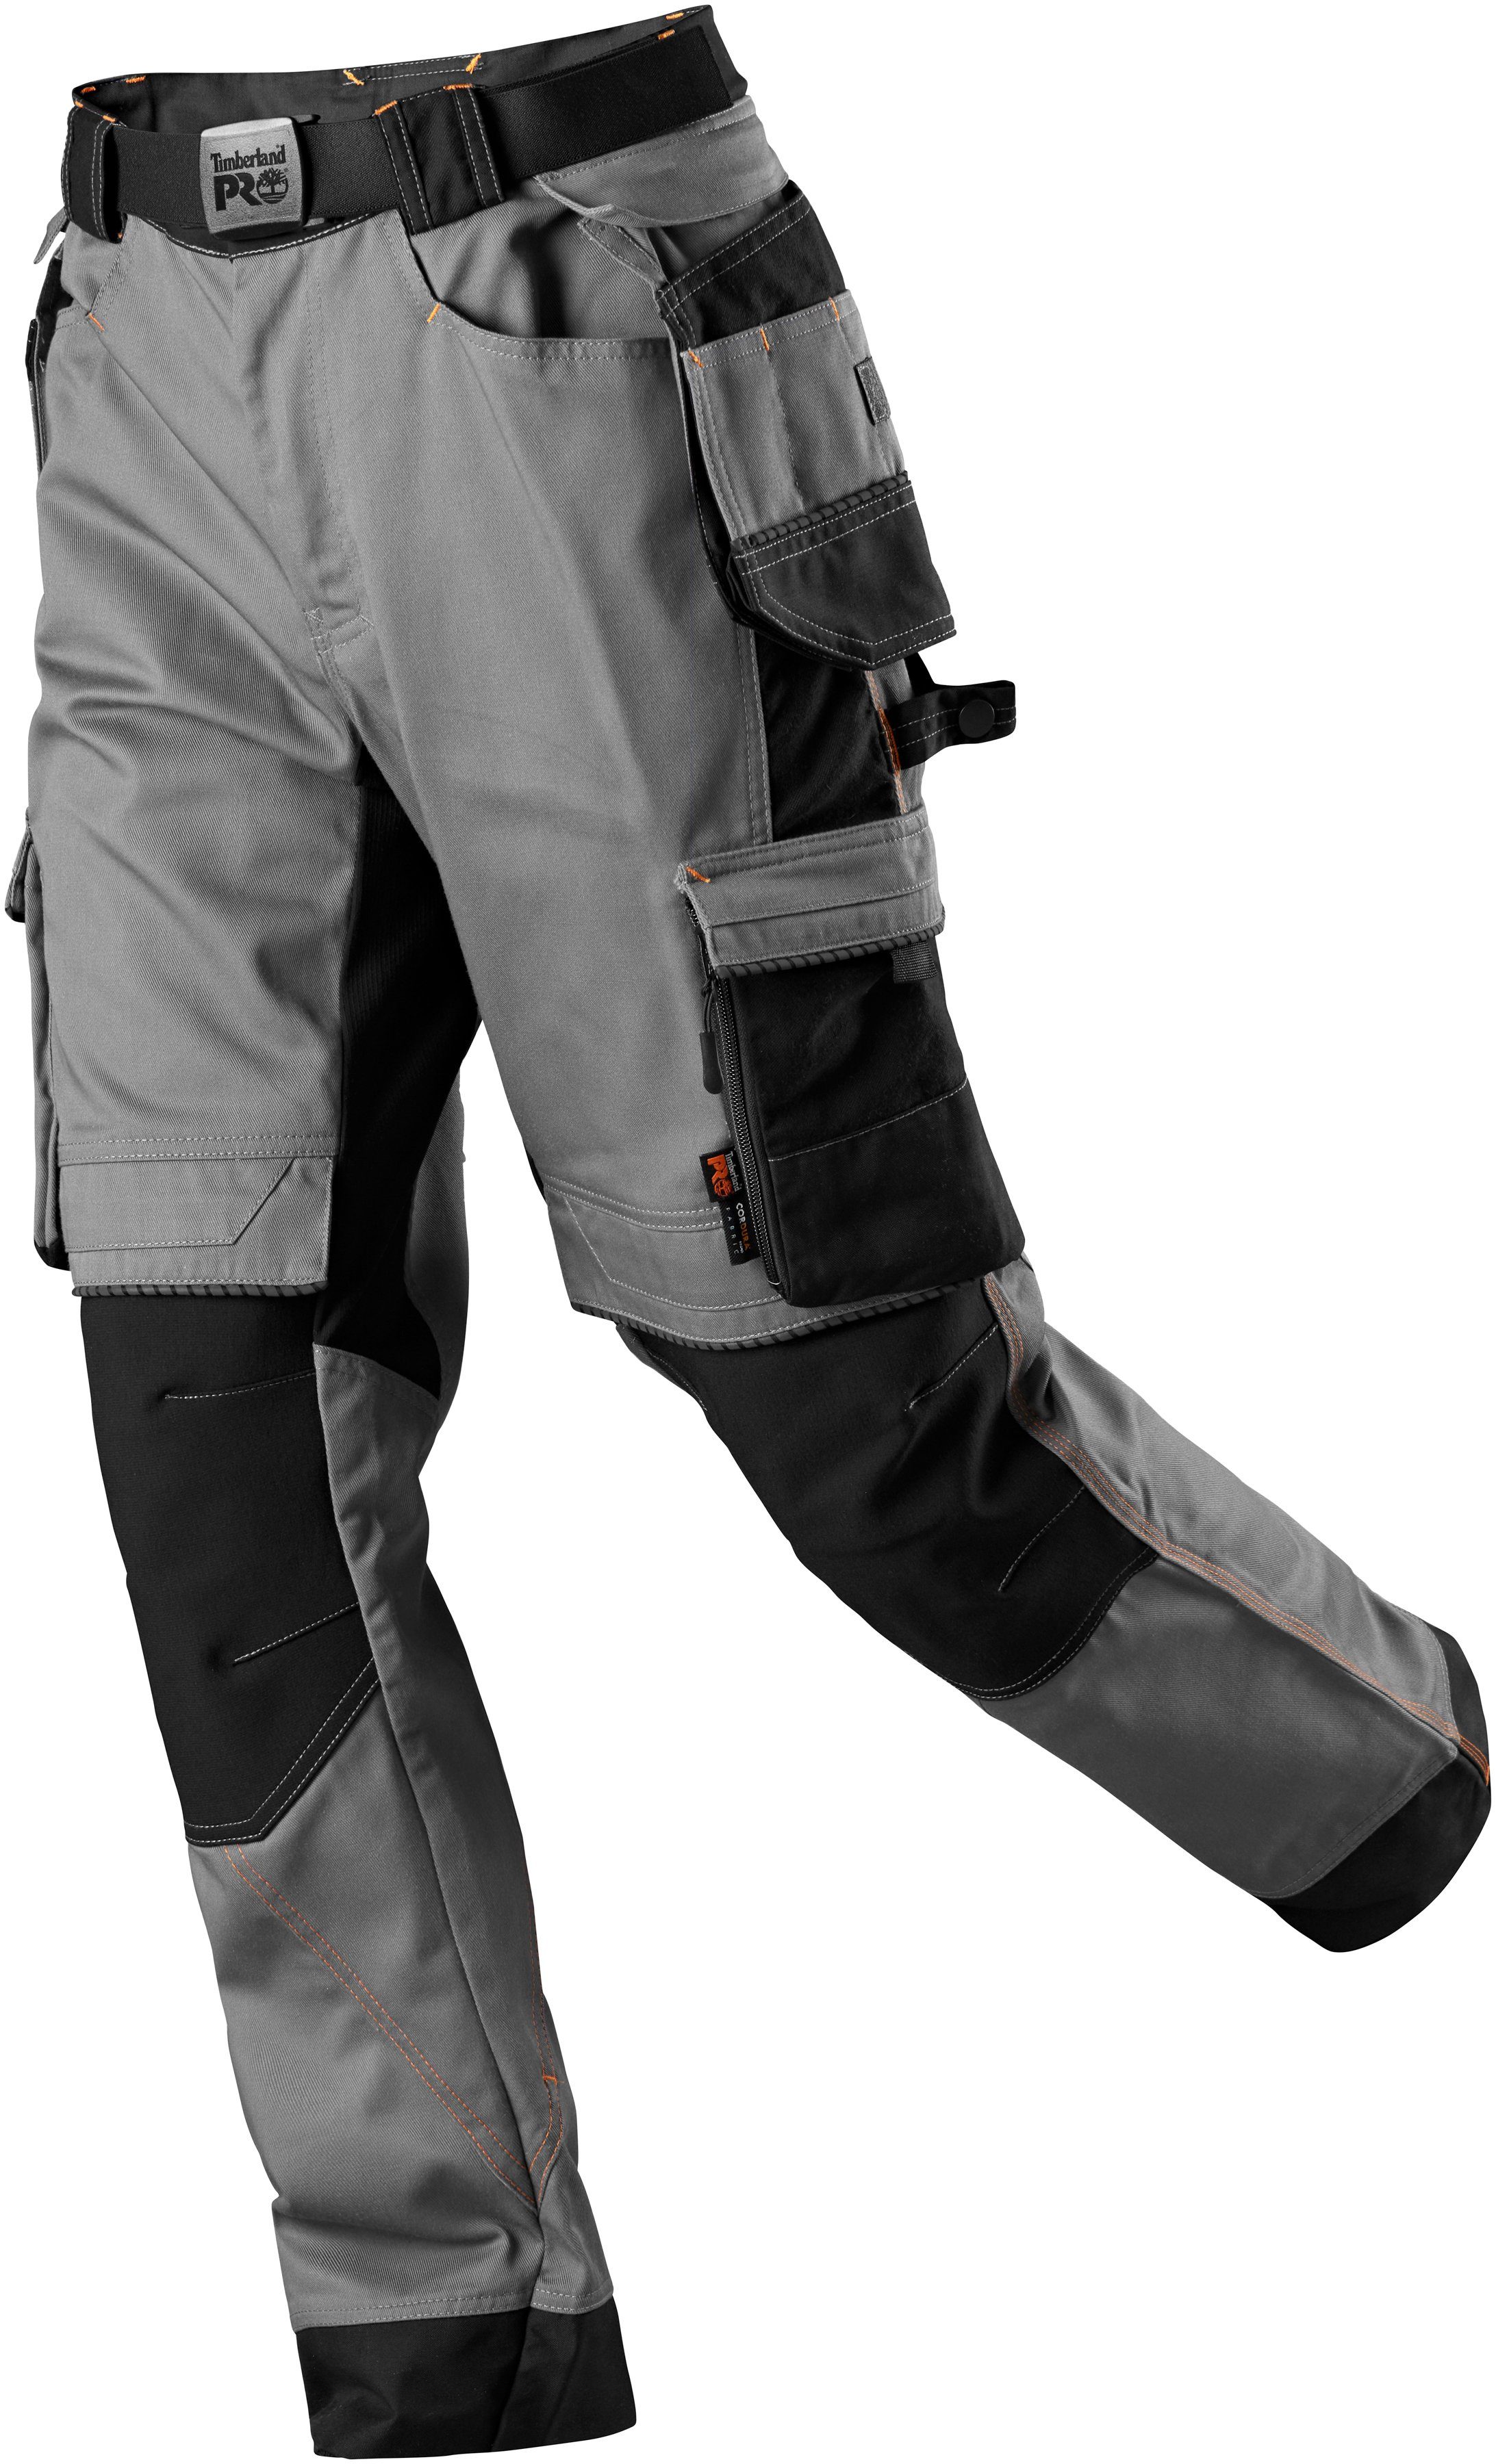 Arbeitshose Pro Timberland grau rundem Stretch-Komfortbund Tough Vent mit